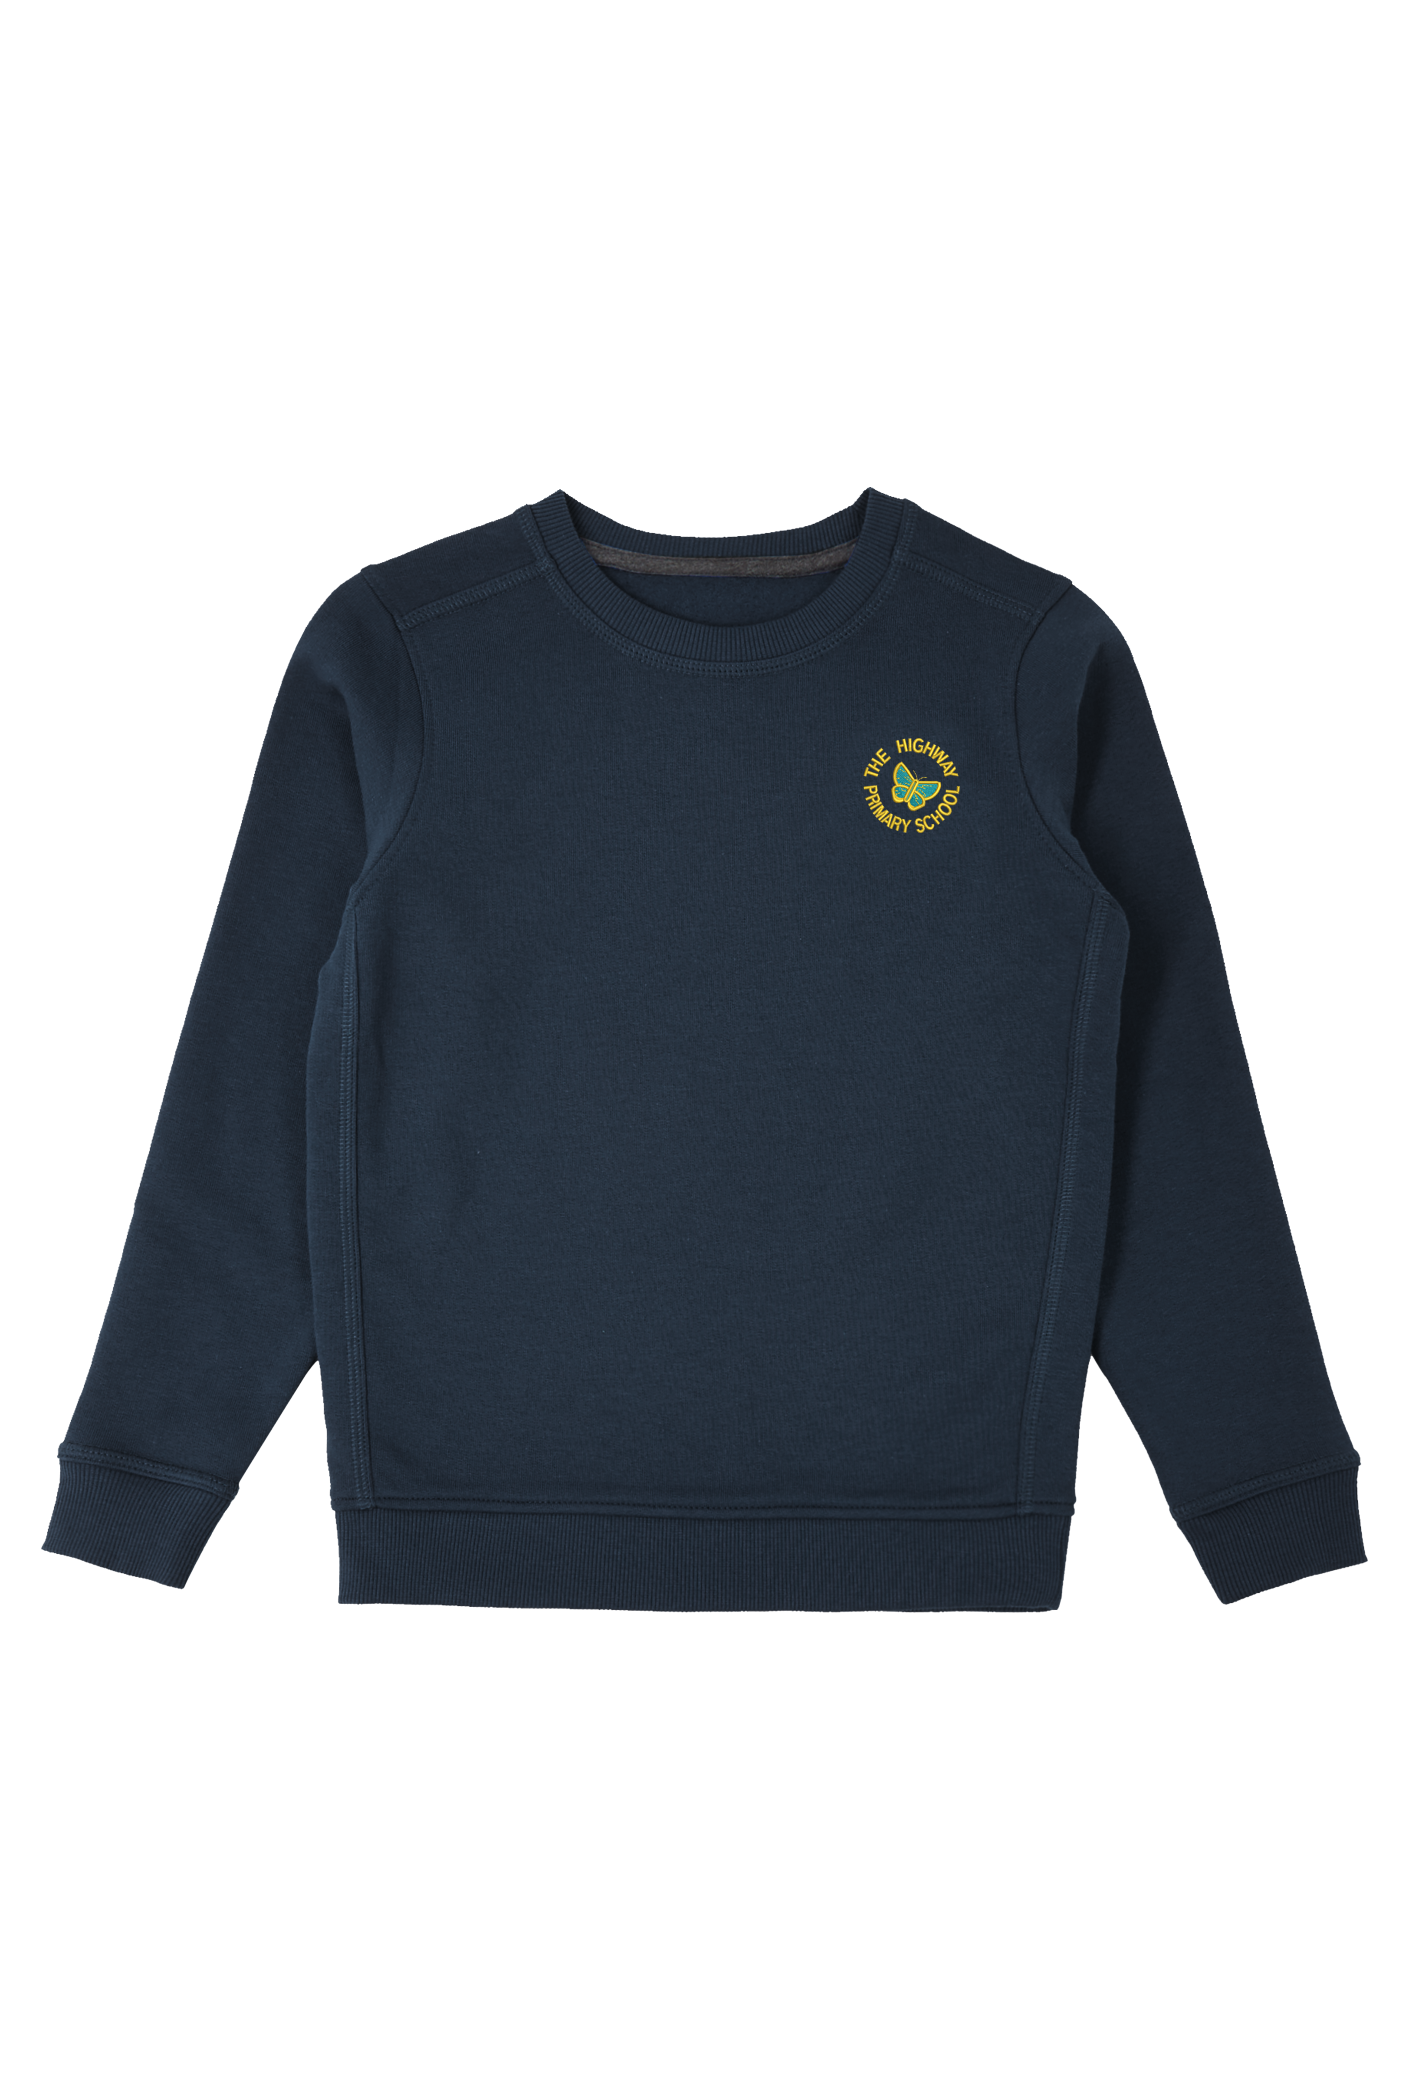 The Highway Primary School Crew Sweatshirt